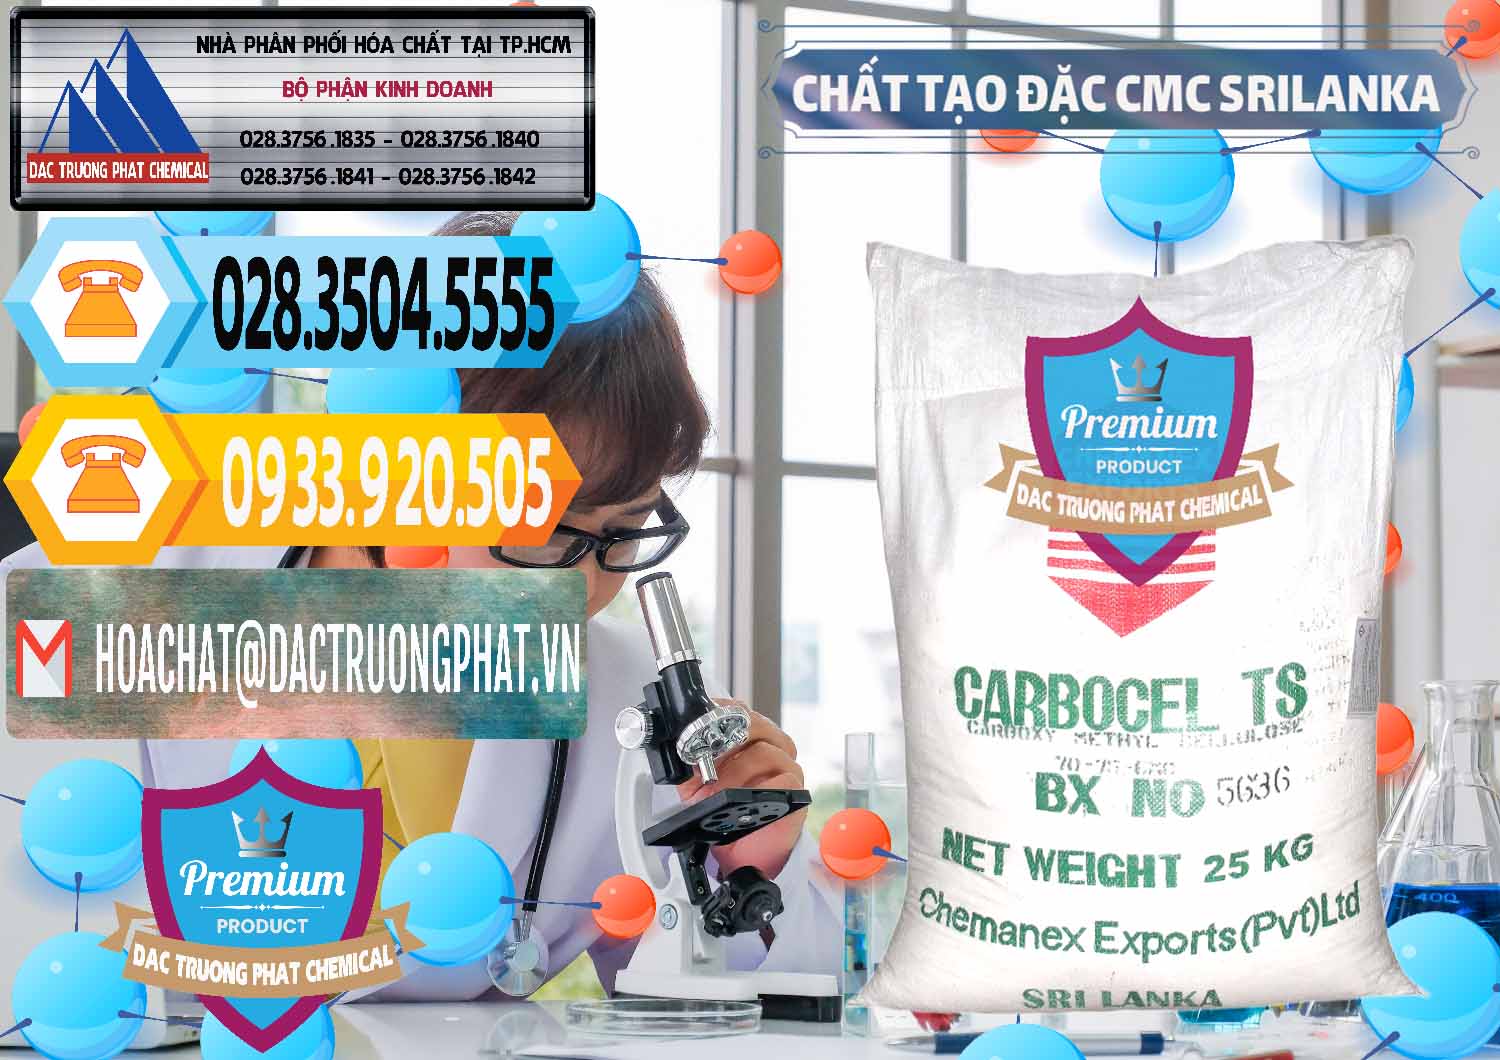 Cung cấp _ bán Chất Tạo Đặc CMC - Carboxyl Methyl Cellulose Srilanka - 0045 - Công ty cung cấp _ nhập khẩu hóa chất tại TP.HCM - hoachattayrua.net